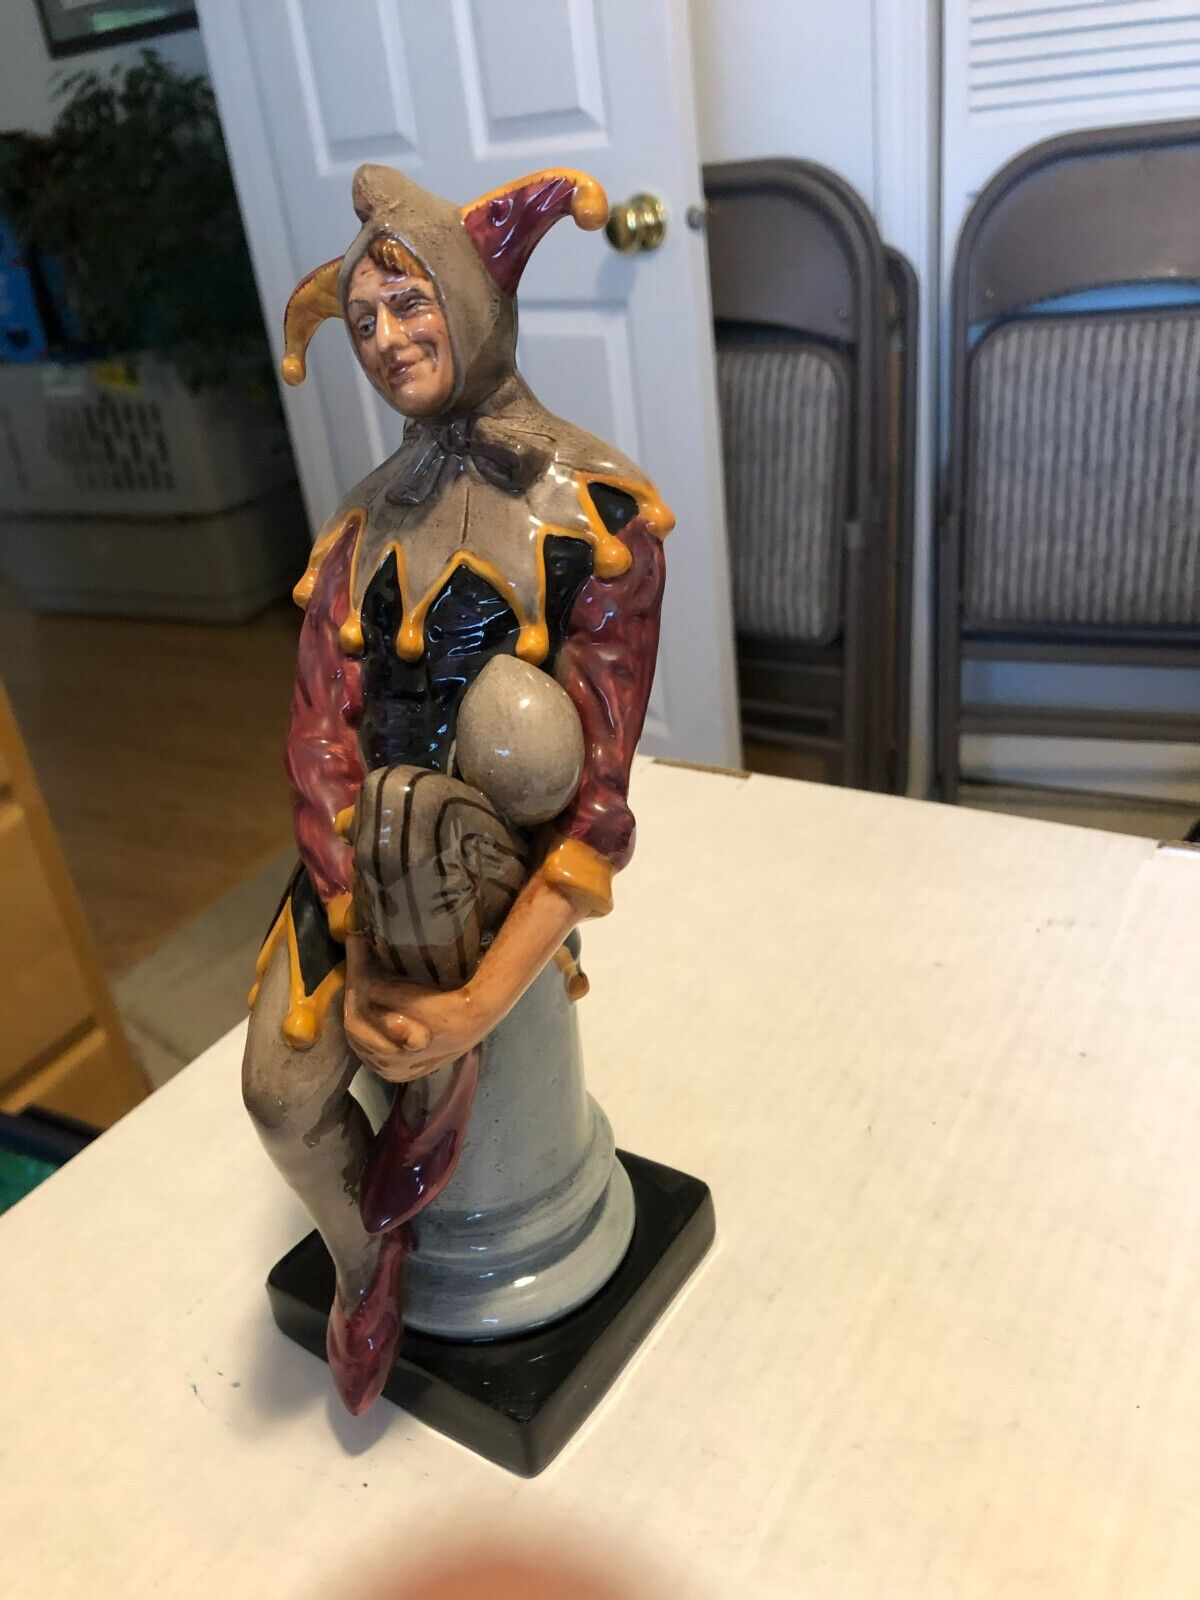 Vintage Royal Doulton HN2016 Jester figurine